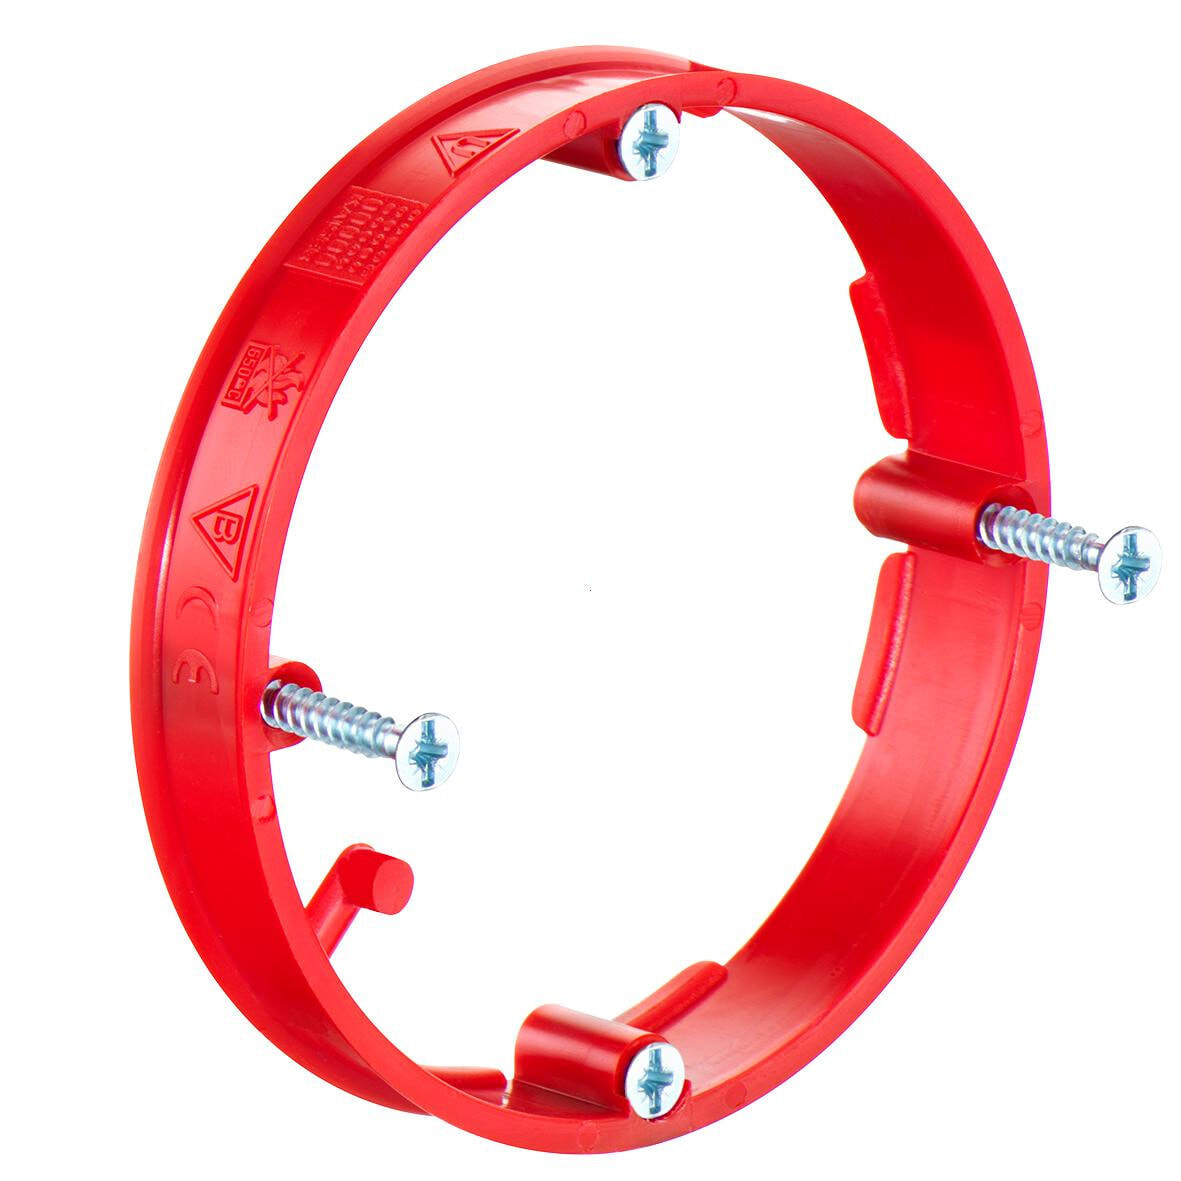 Kaiser 1155-71. Тип: Кольцо, Материал: Пластик, Цвет продукта: Красный. Диаметр отверстия: 6,7 см, Внешний диаметр: 7 см